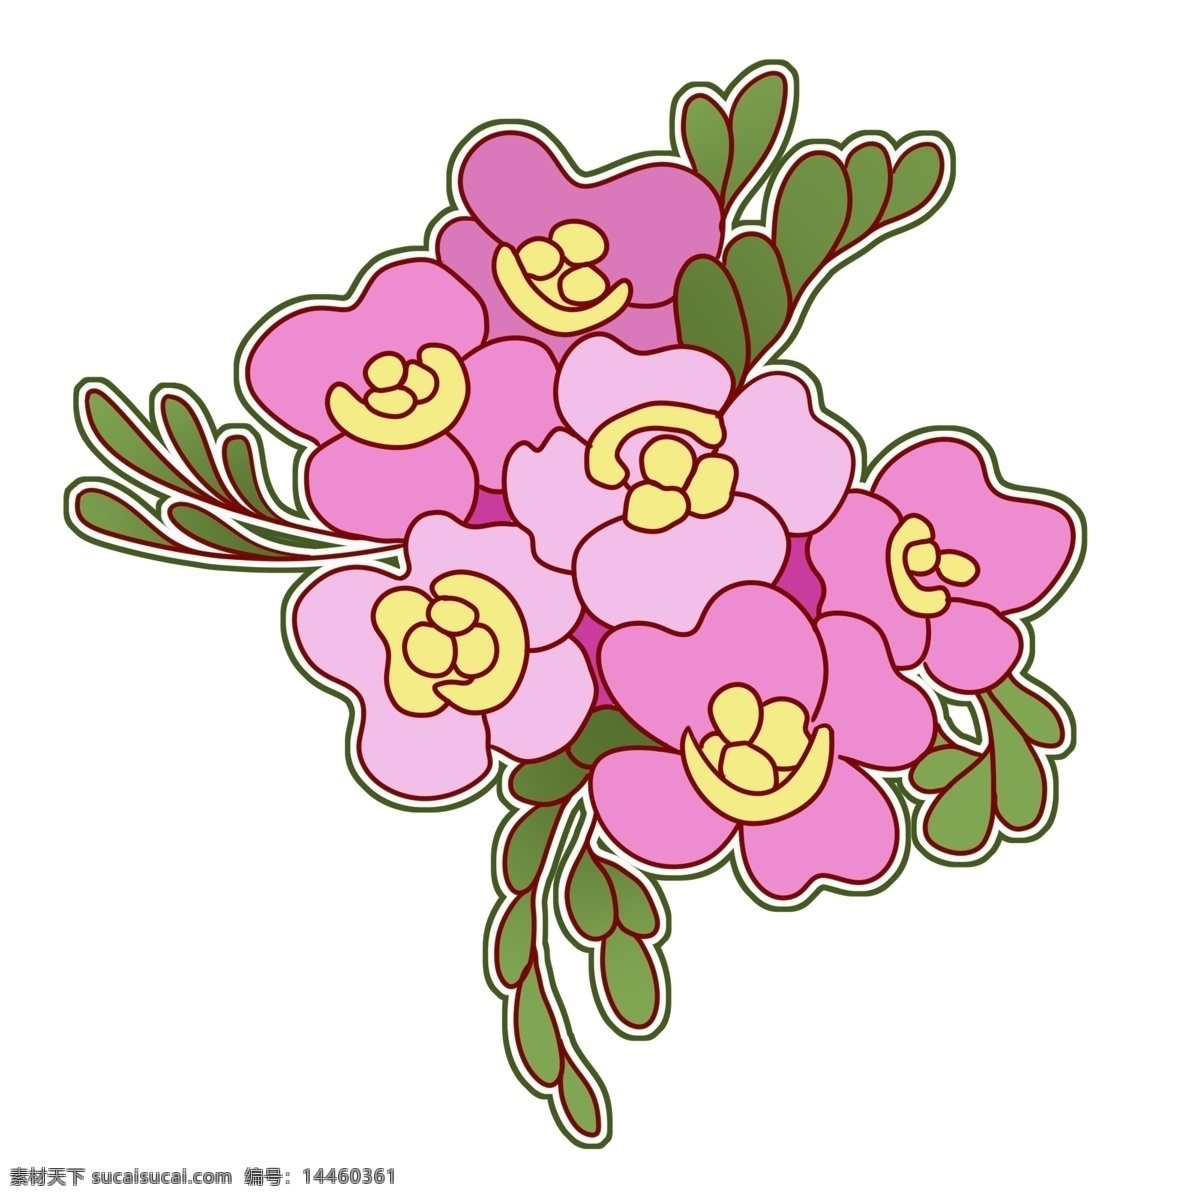 手绘 粉色 花朵 插画 手绘花朵 粉色花朵插画 漂亮的花朵 卡通花朵 水彩花朵 黄色花蕊 绿色的叶子